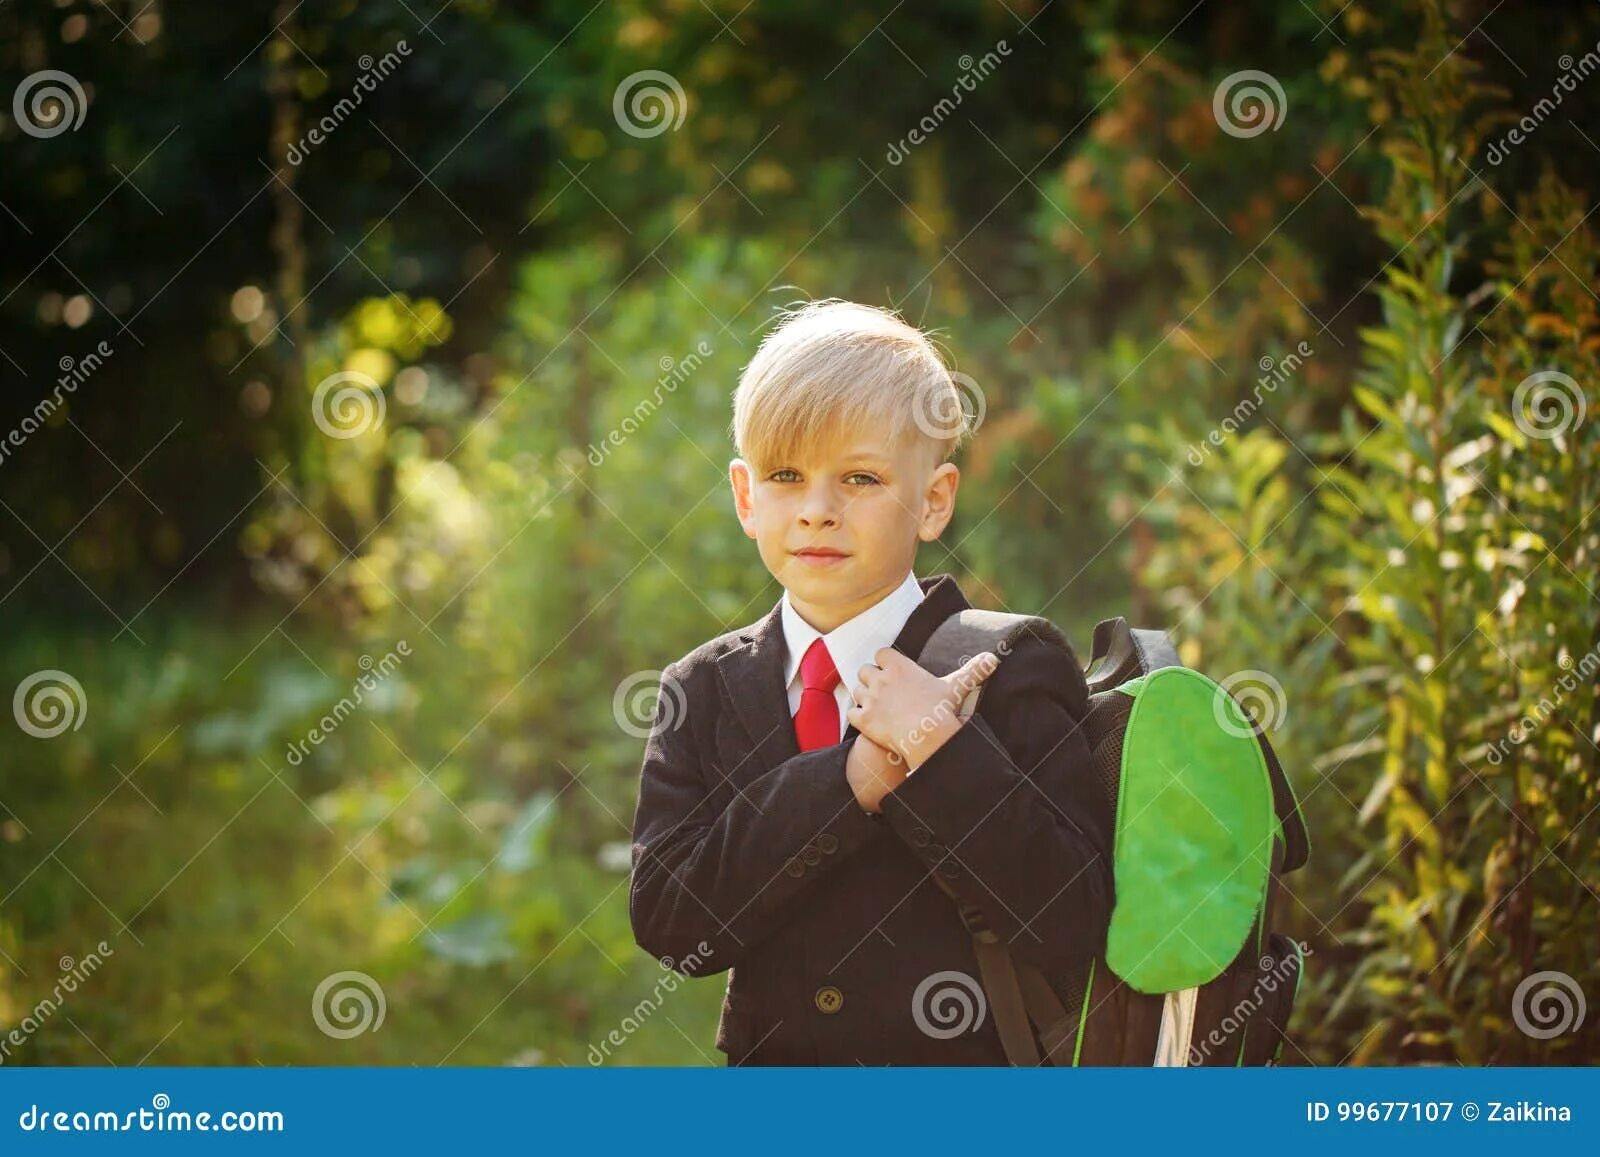 Мальчик идет. Белобрысый мальчик в школе. Мальчик возвращается со школы. Рыжий мальчик идет в школу фото.